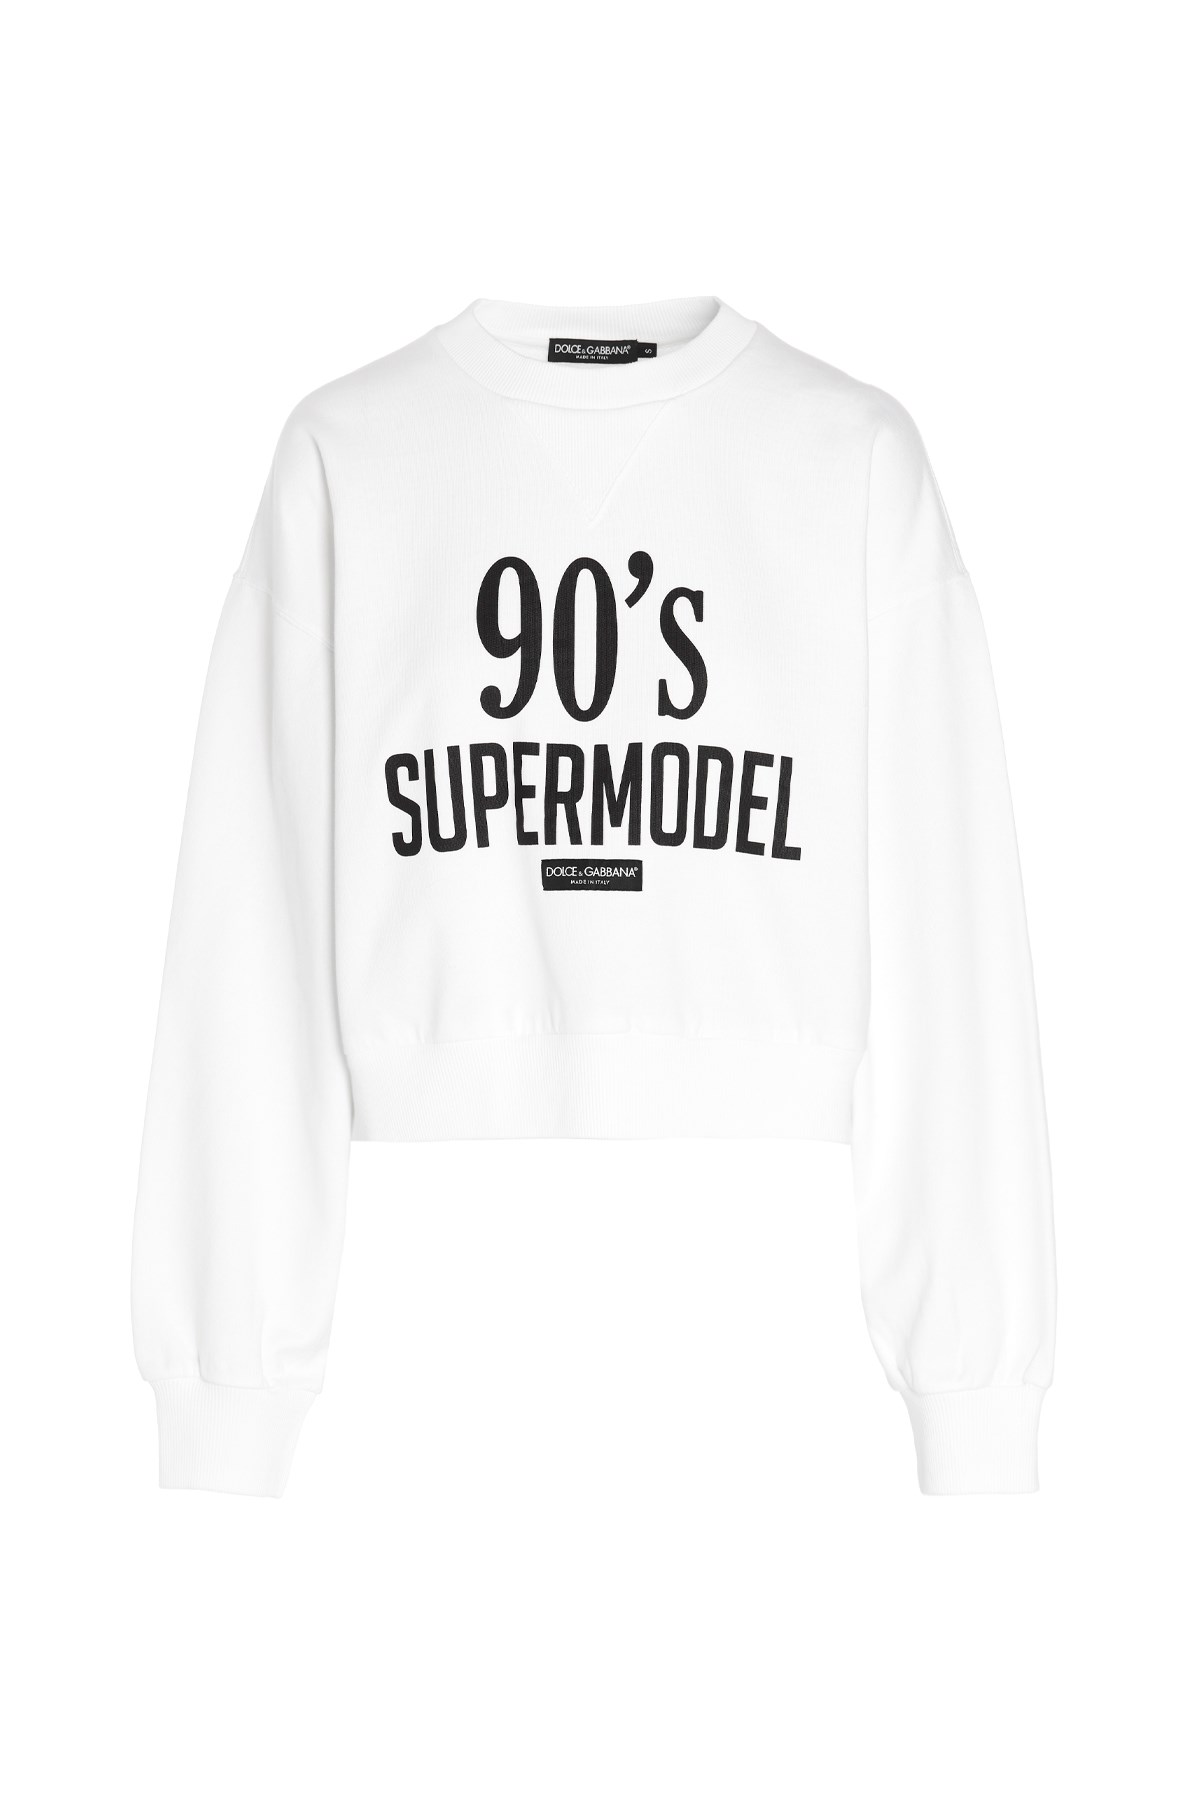 DOLCE & GABBANA Sweatshirt '90S Supermodel' Mit Print